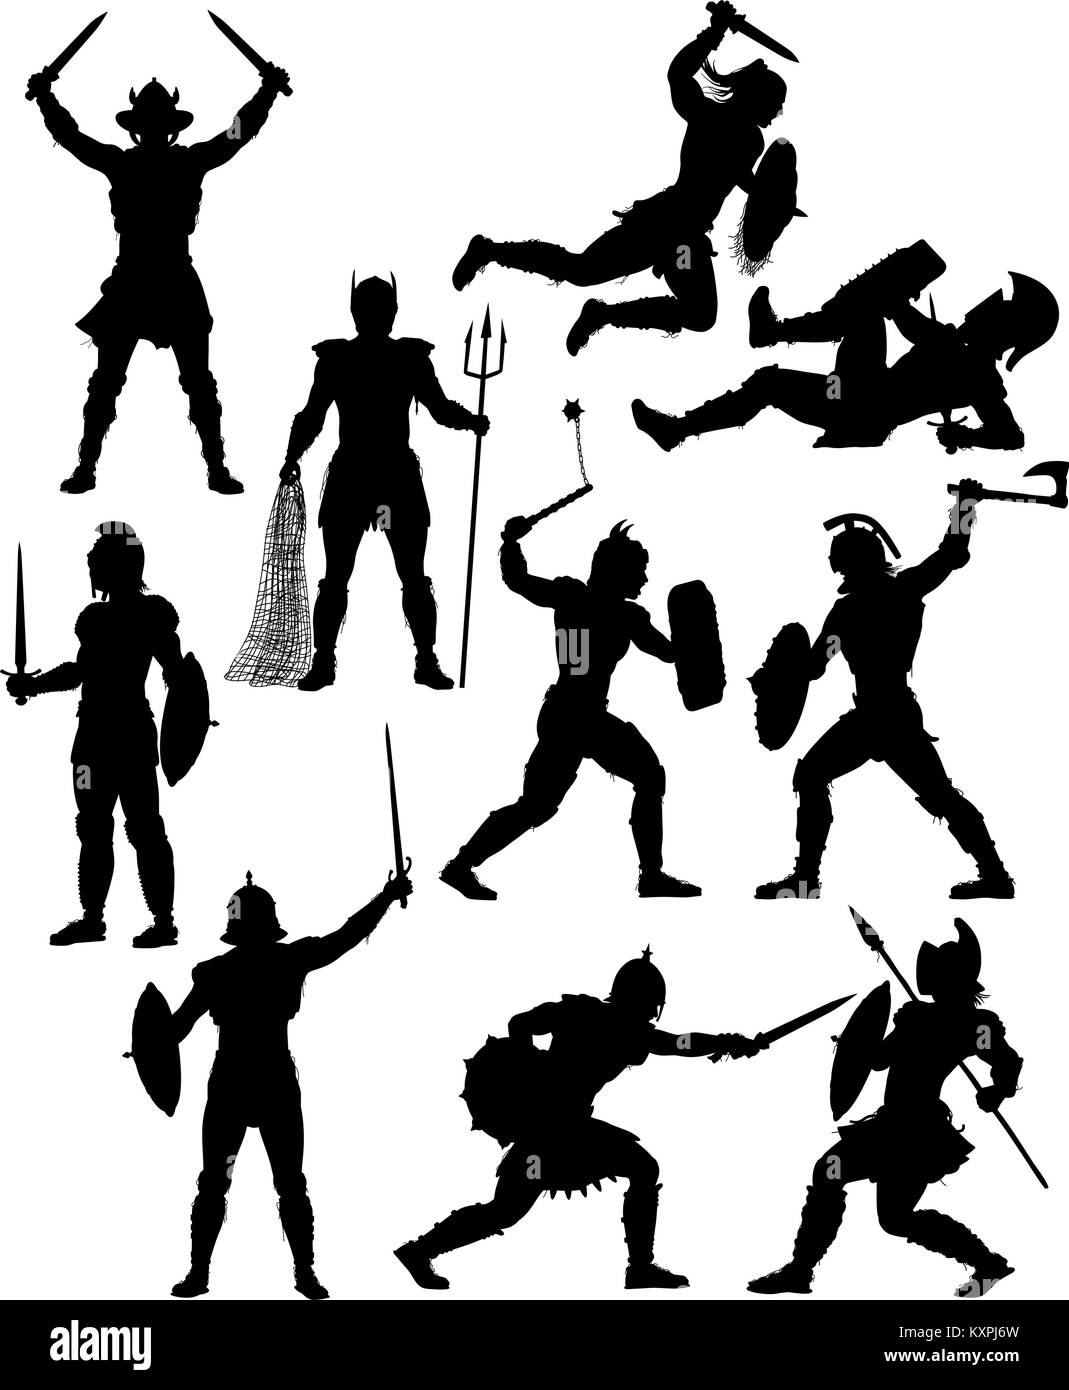 Jeu de silhouettes vecteur modifiable des combats de gladiateurs avec des chiffres et des armes en tant qu'objets séparés Illustration de Vecteur